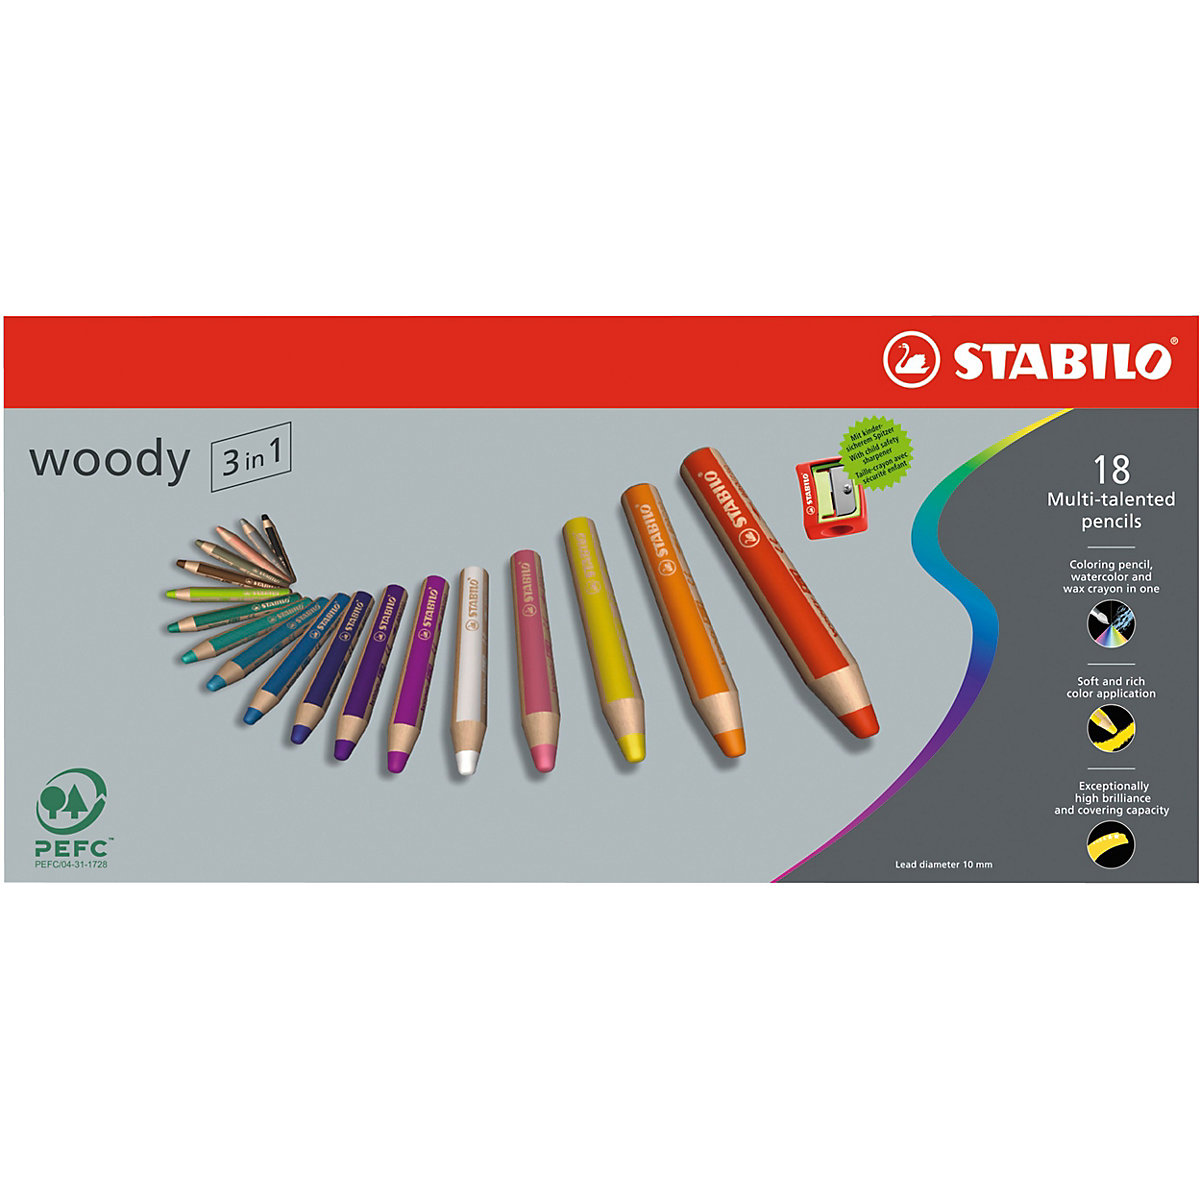 STABILO Buntstifte woody 3 in 1 18 Farben inkl. Spitzer